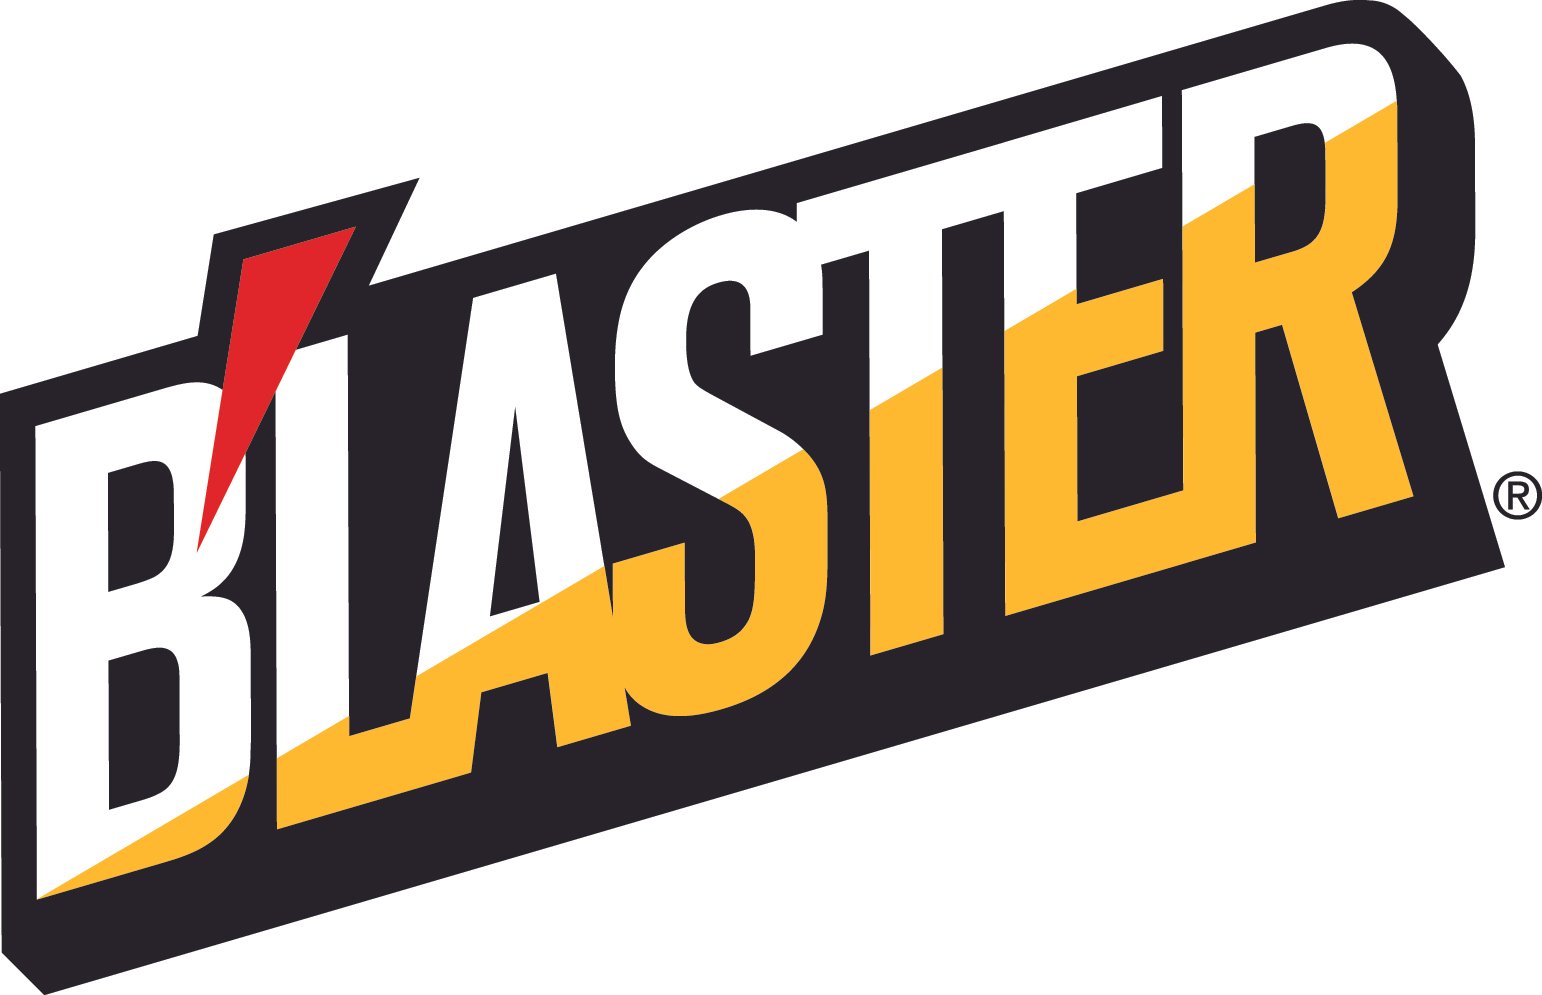 blaster logo.jpg